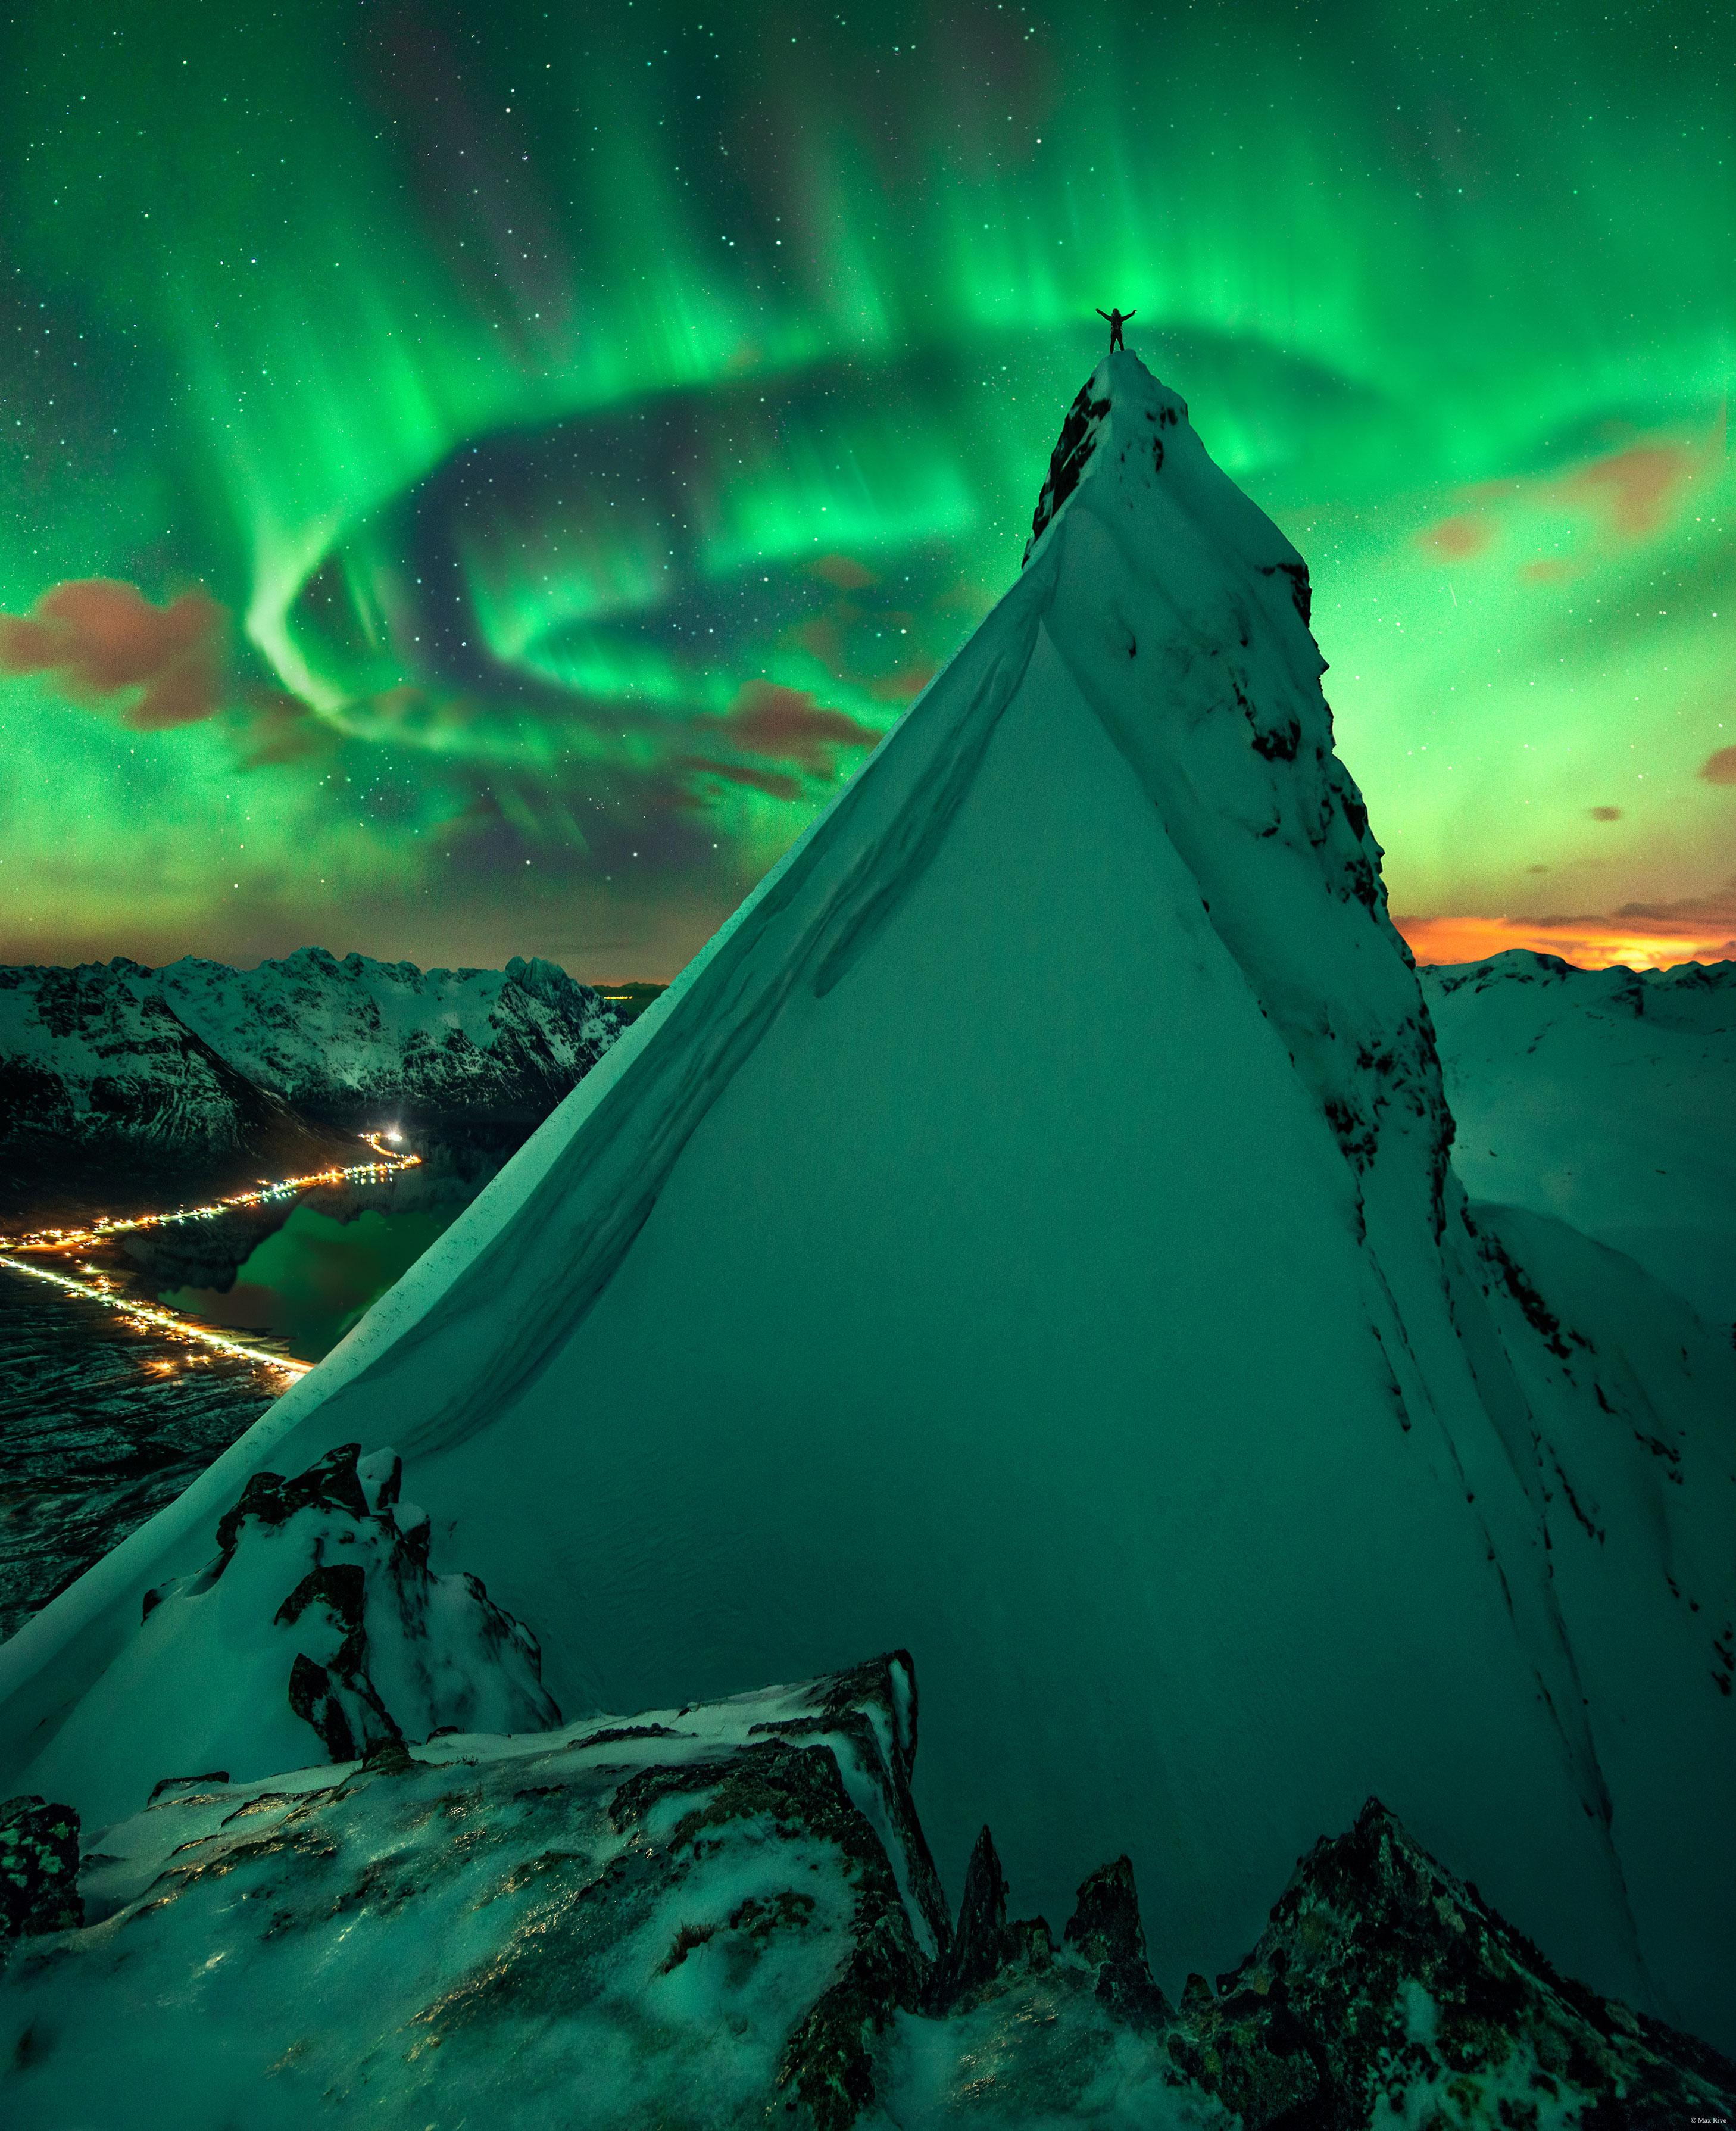 شخصٌ يقف فوق تلَّةٍ شديدة الانحدار مُغطّاة بالثلج رافعاً ذراعيه، بينما يُرى شفقٌ قطبيٌّ أخضر في المدى، وخلفه هناك نجومٌ مرئيّة.